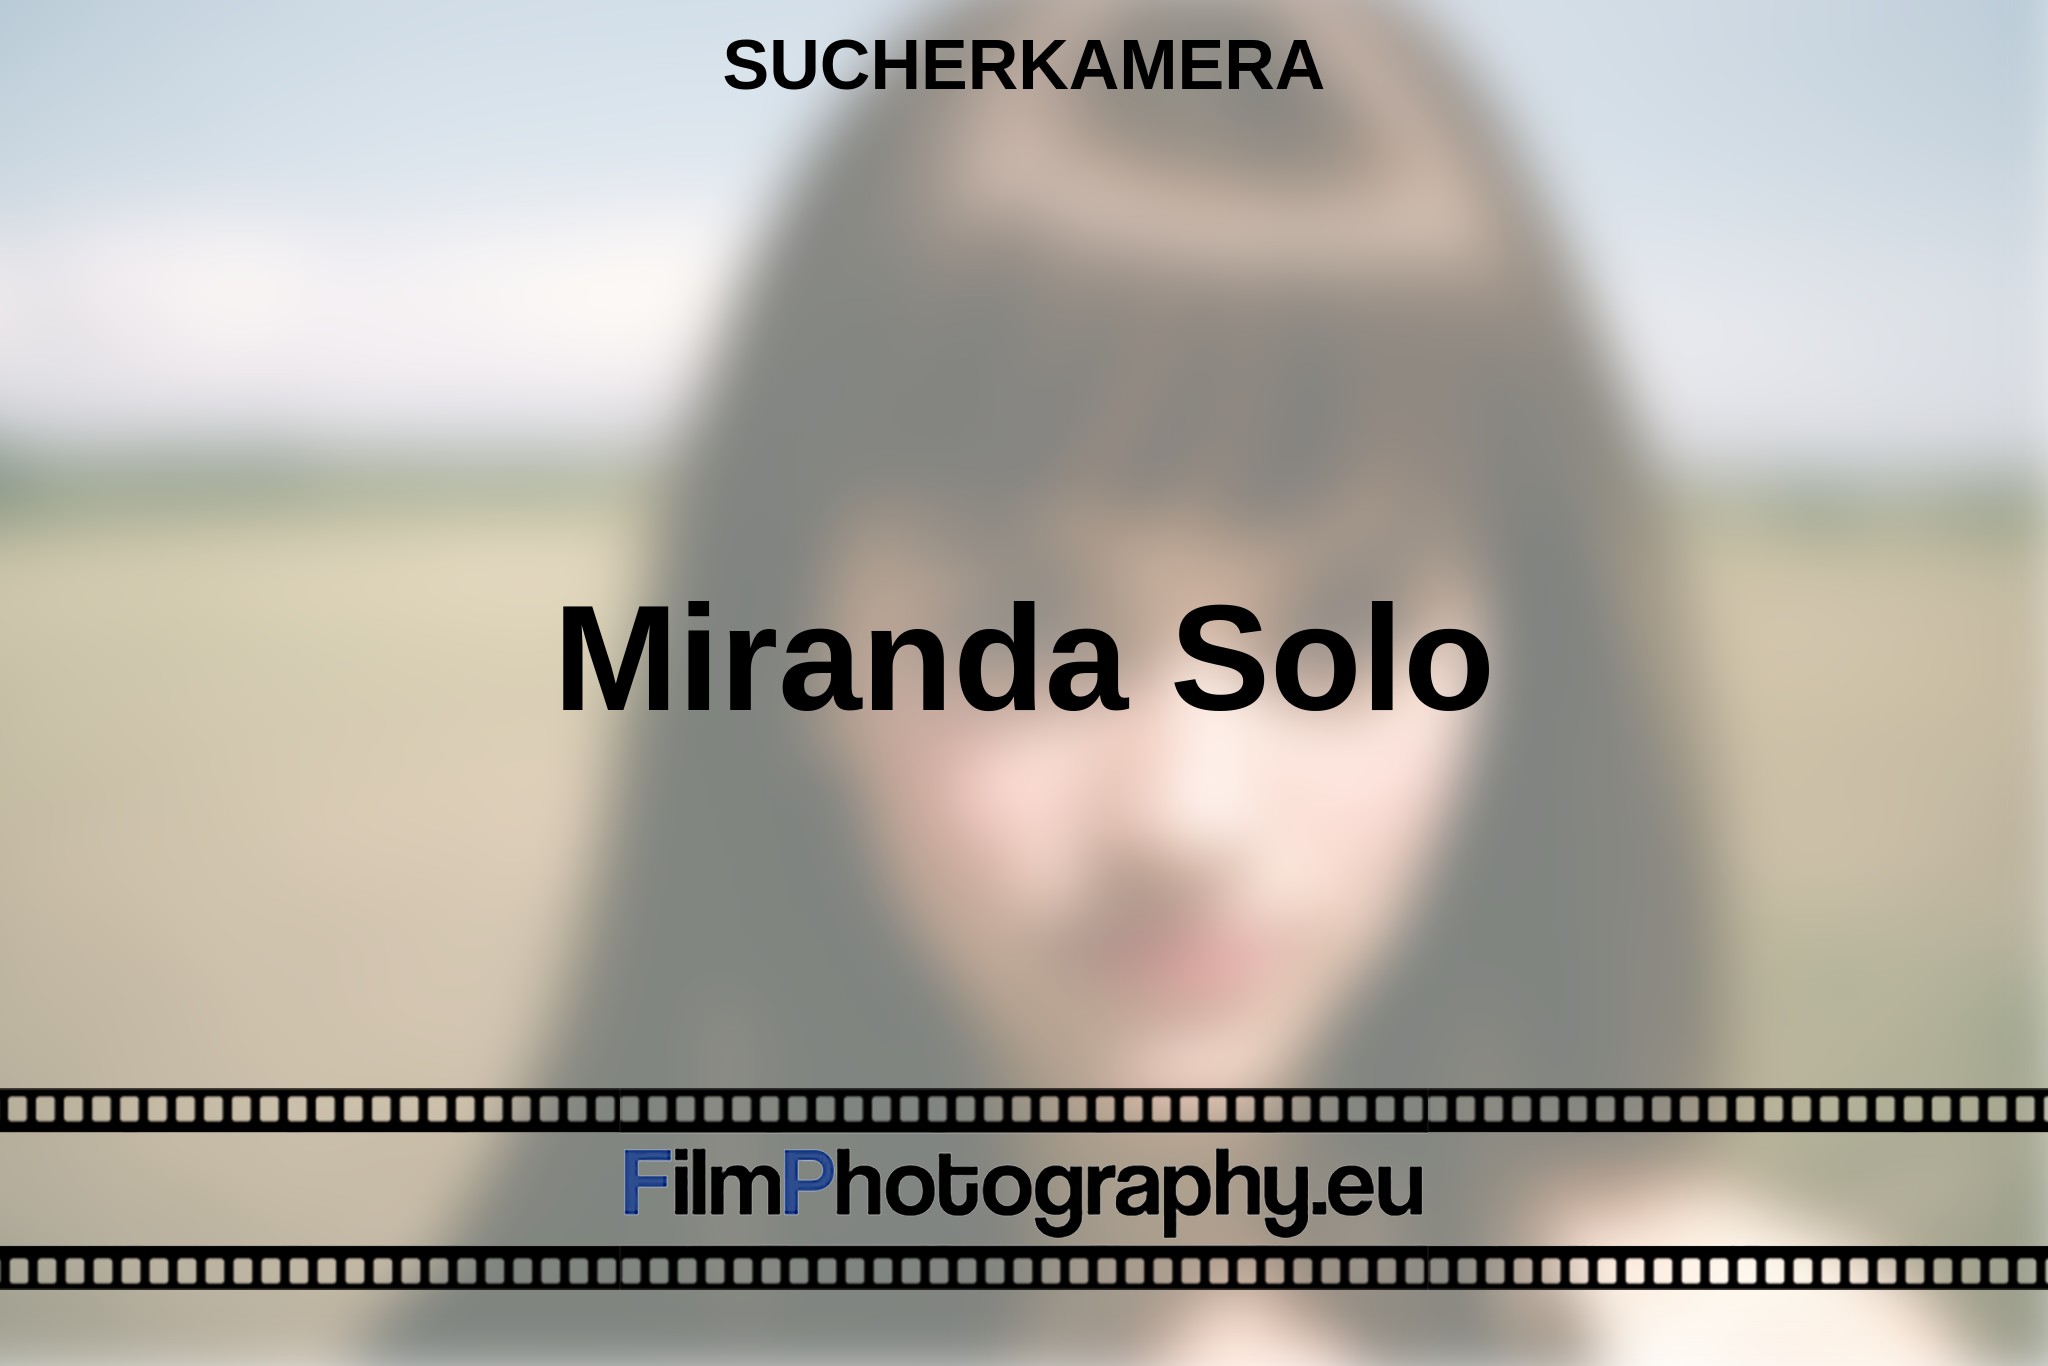 miranda-solo-sucherkamera-bnv.jpg